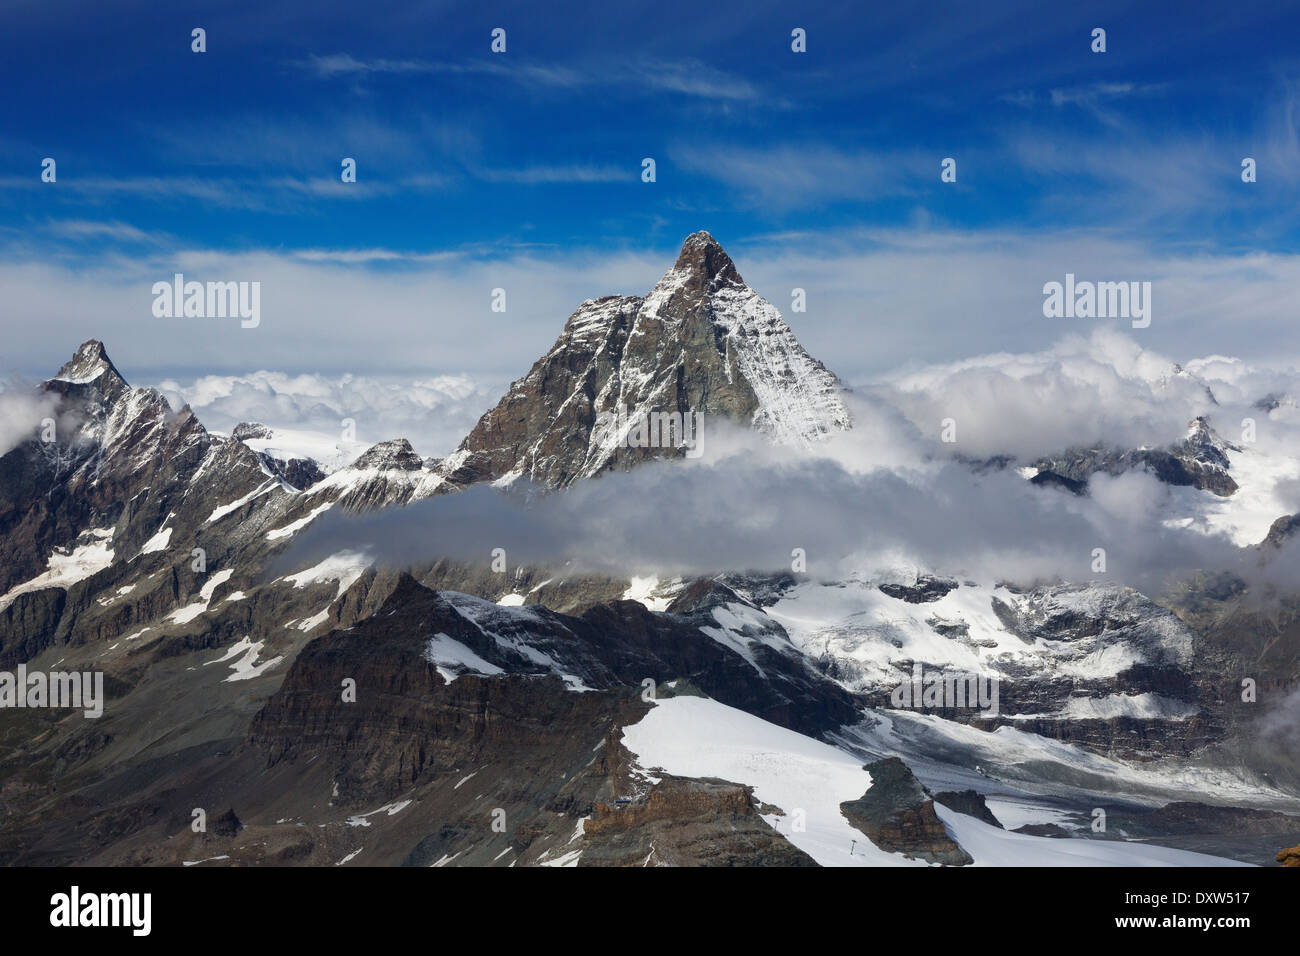 Ciel bleu et nuages, Matterhorn Glacier Paradise Peak vu depuis dans les Alpes Suisses près de Zermatt, Suisse Banque D'Images